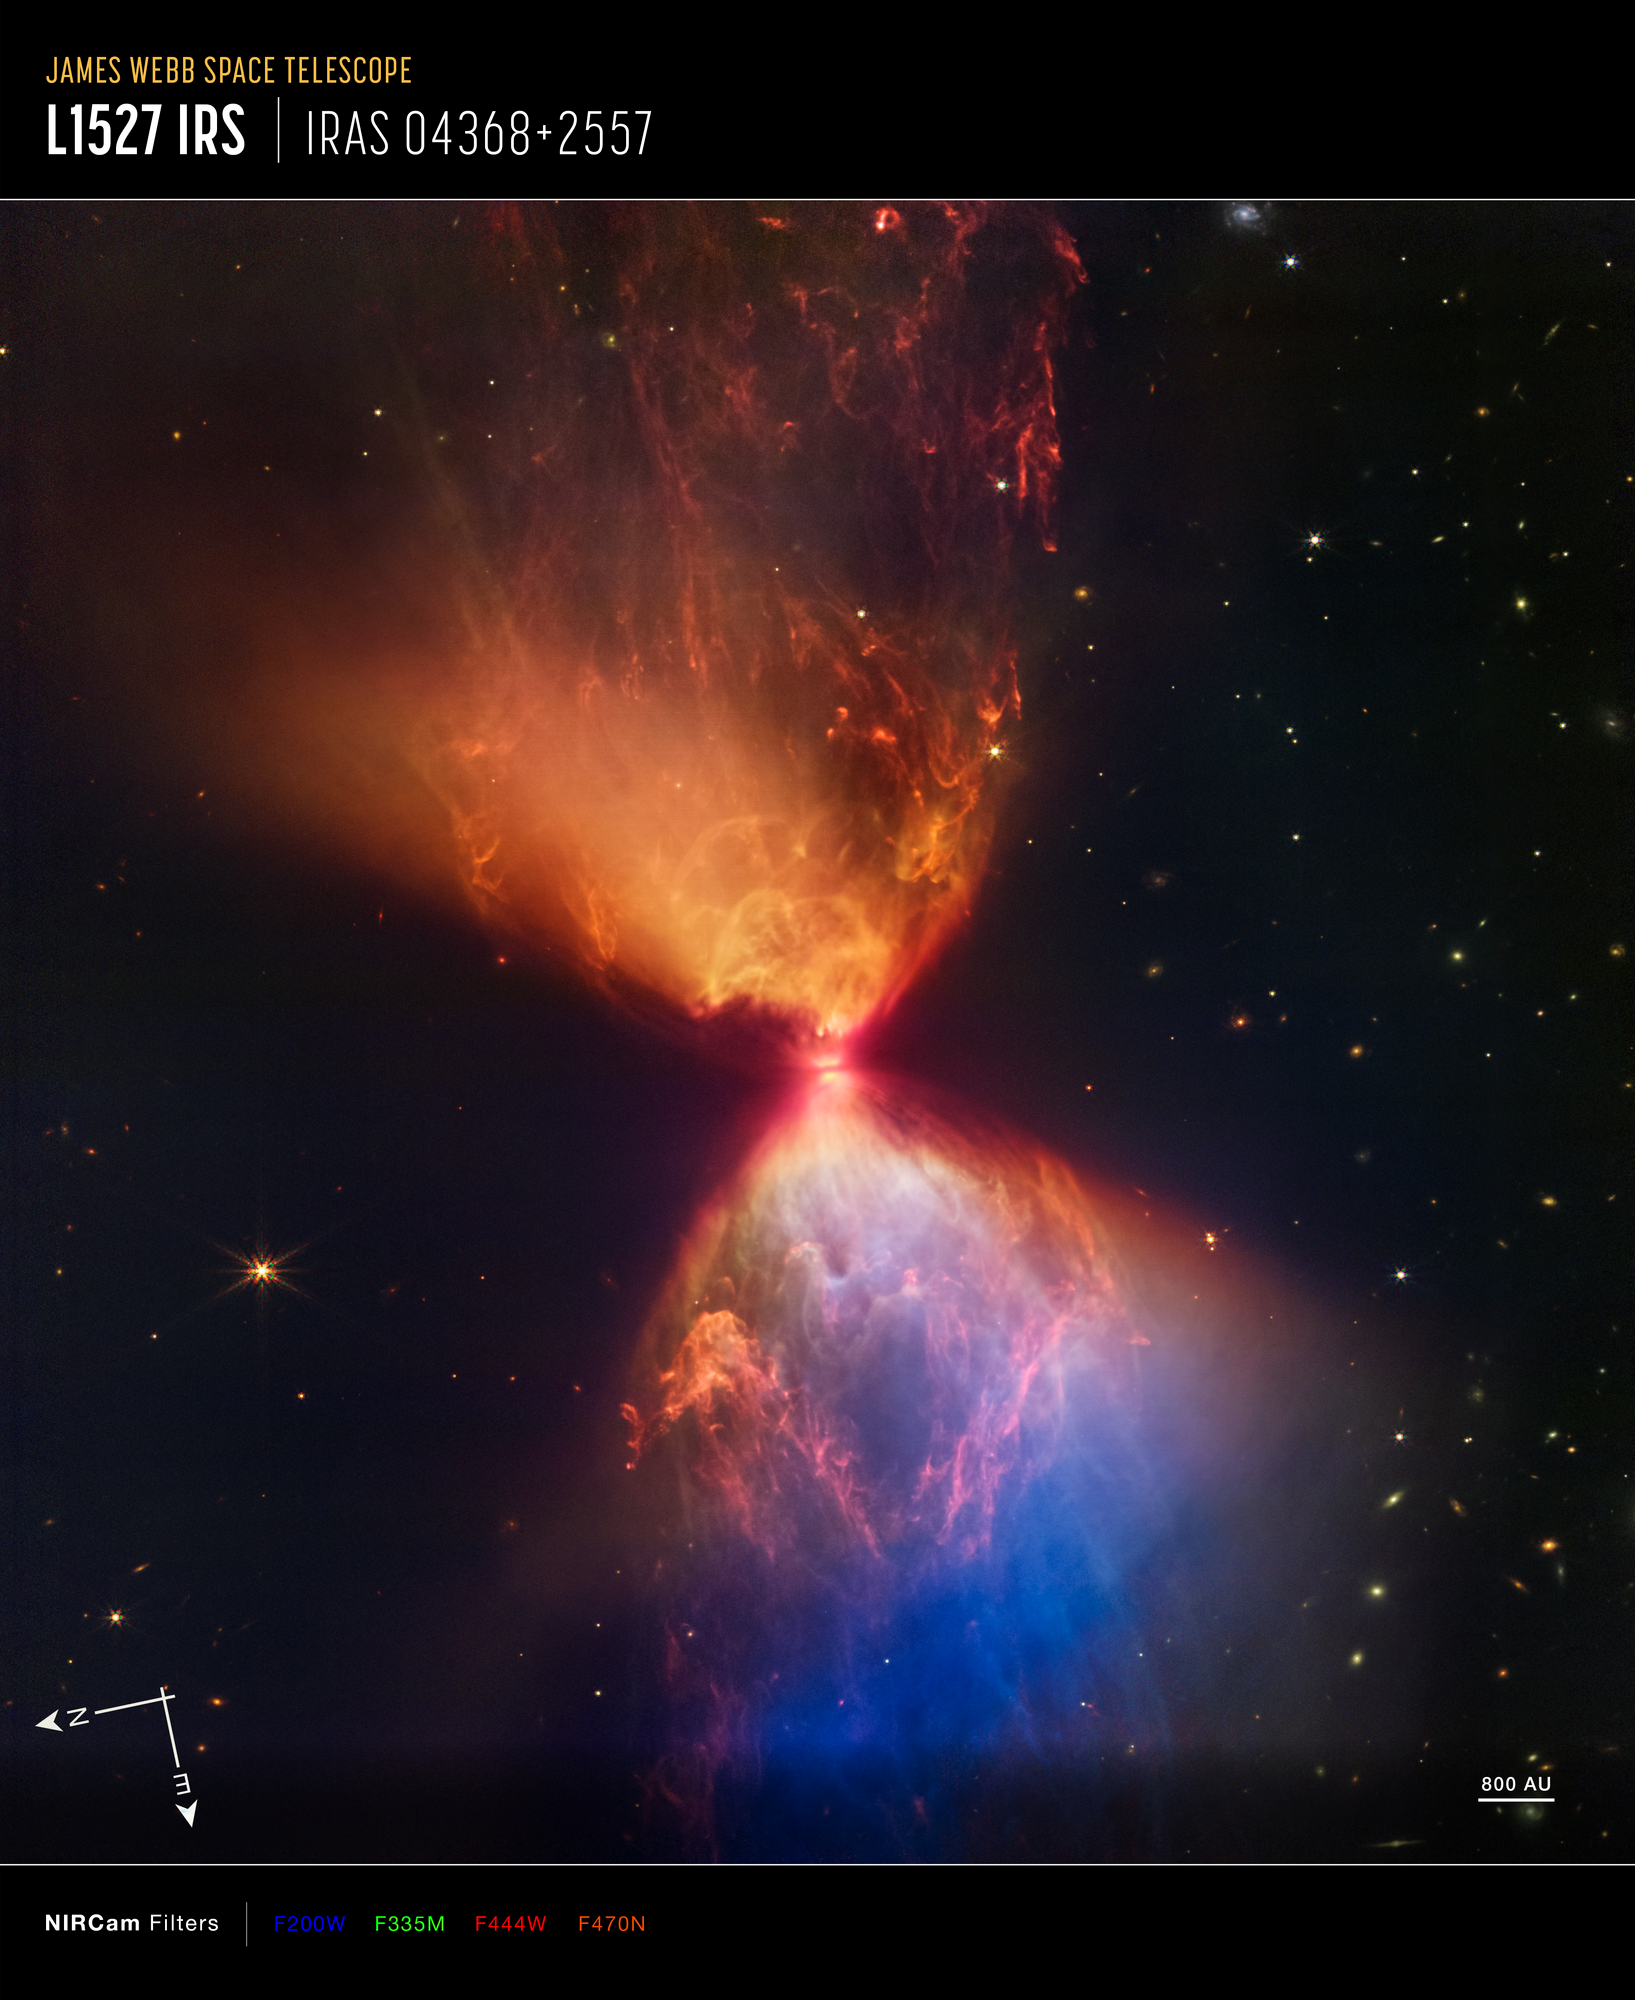 Na zdjęciu w bliskiej podczerwieni widać protogwiazdę w ciemnej mgławicy L1527. Obraz został wykonany przez kamerę NIRCam w Kosmicznym Teleskopie Jamesa Webba. Przekątna obrazu na niebie odpowiada ~2,2’ (minuty łuku). W odległości 460 l.św. od protogwiazdy odpowiada to wielkości obszaru ~0,3 l.św. Na dole po prawej stronie zaznaczono odcinek 800 AU, czyli 800 jednostek astronomicznych (800x500s = 400000s ~4,6 dnia świetlnego). Na tej mozaice zdjęć w bliskiej podczerwieni kolory zostały zmapowane następująco: niebieski – filtr F200W, zielony – F335W, czerwony – F444W, pomarańczowy – F470N. Protogwiazda jest zanurzona w ciemnej chmurze materii, którą akreuje i przez to staje się coraz cięższa. Wyrzuty materii z protogwiazdy wyczyściły przestrzeń powyżej i poniżej tego ciemnego obłoku, którego granice mają barwę pomarańczową i niebieską. Źródło: NASA, ESA, CSA, STScI, Joseph DePasquale (STScI), Alyssa Pagan (STScI), Anton M. Koekemoer (STScI)